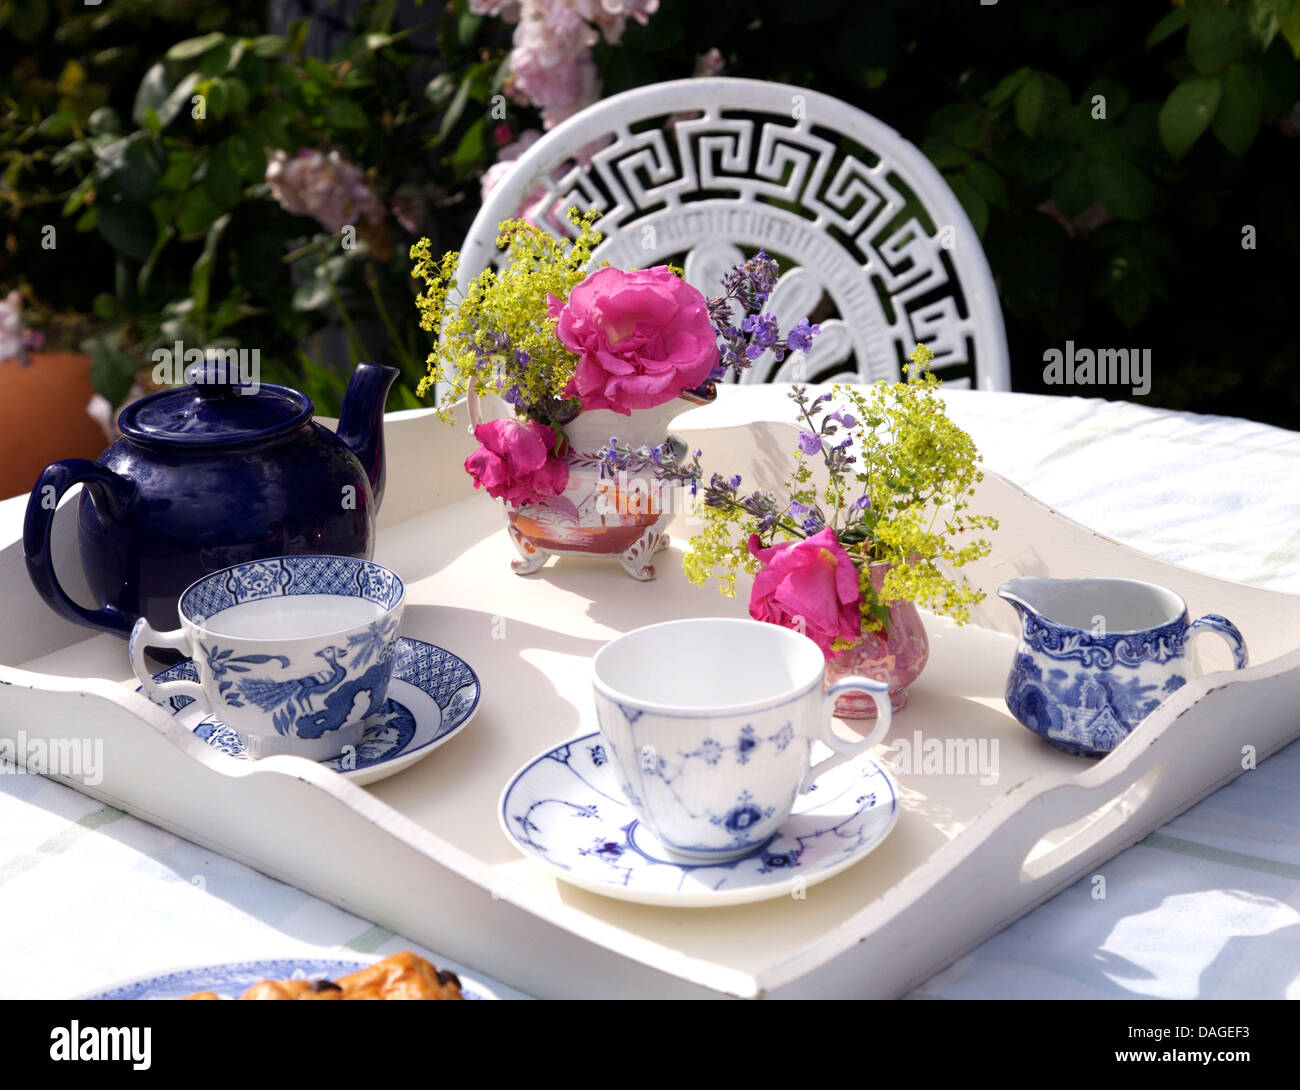 Nahaufnahme der blaue + weiße Tassen und Krug mit Teekanne auf weiß lackiertem Tablett mit Blumensträuße Sommer Blumen in Vasen Stockfoto